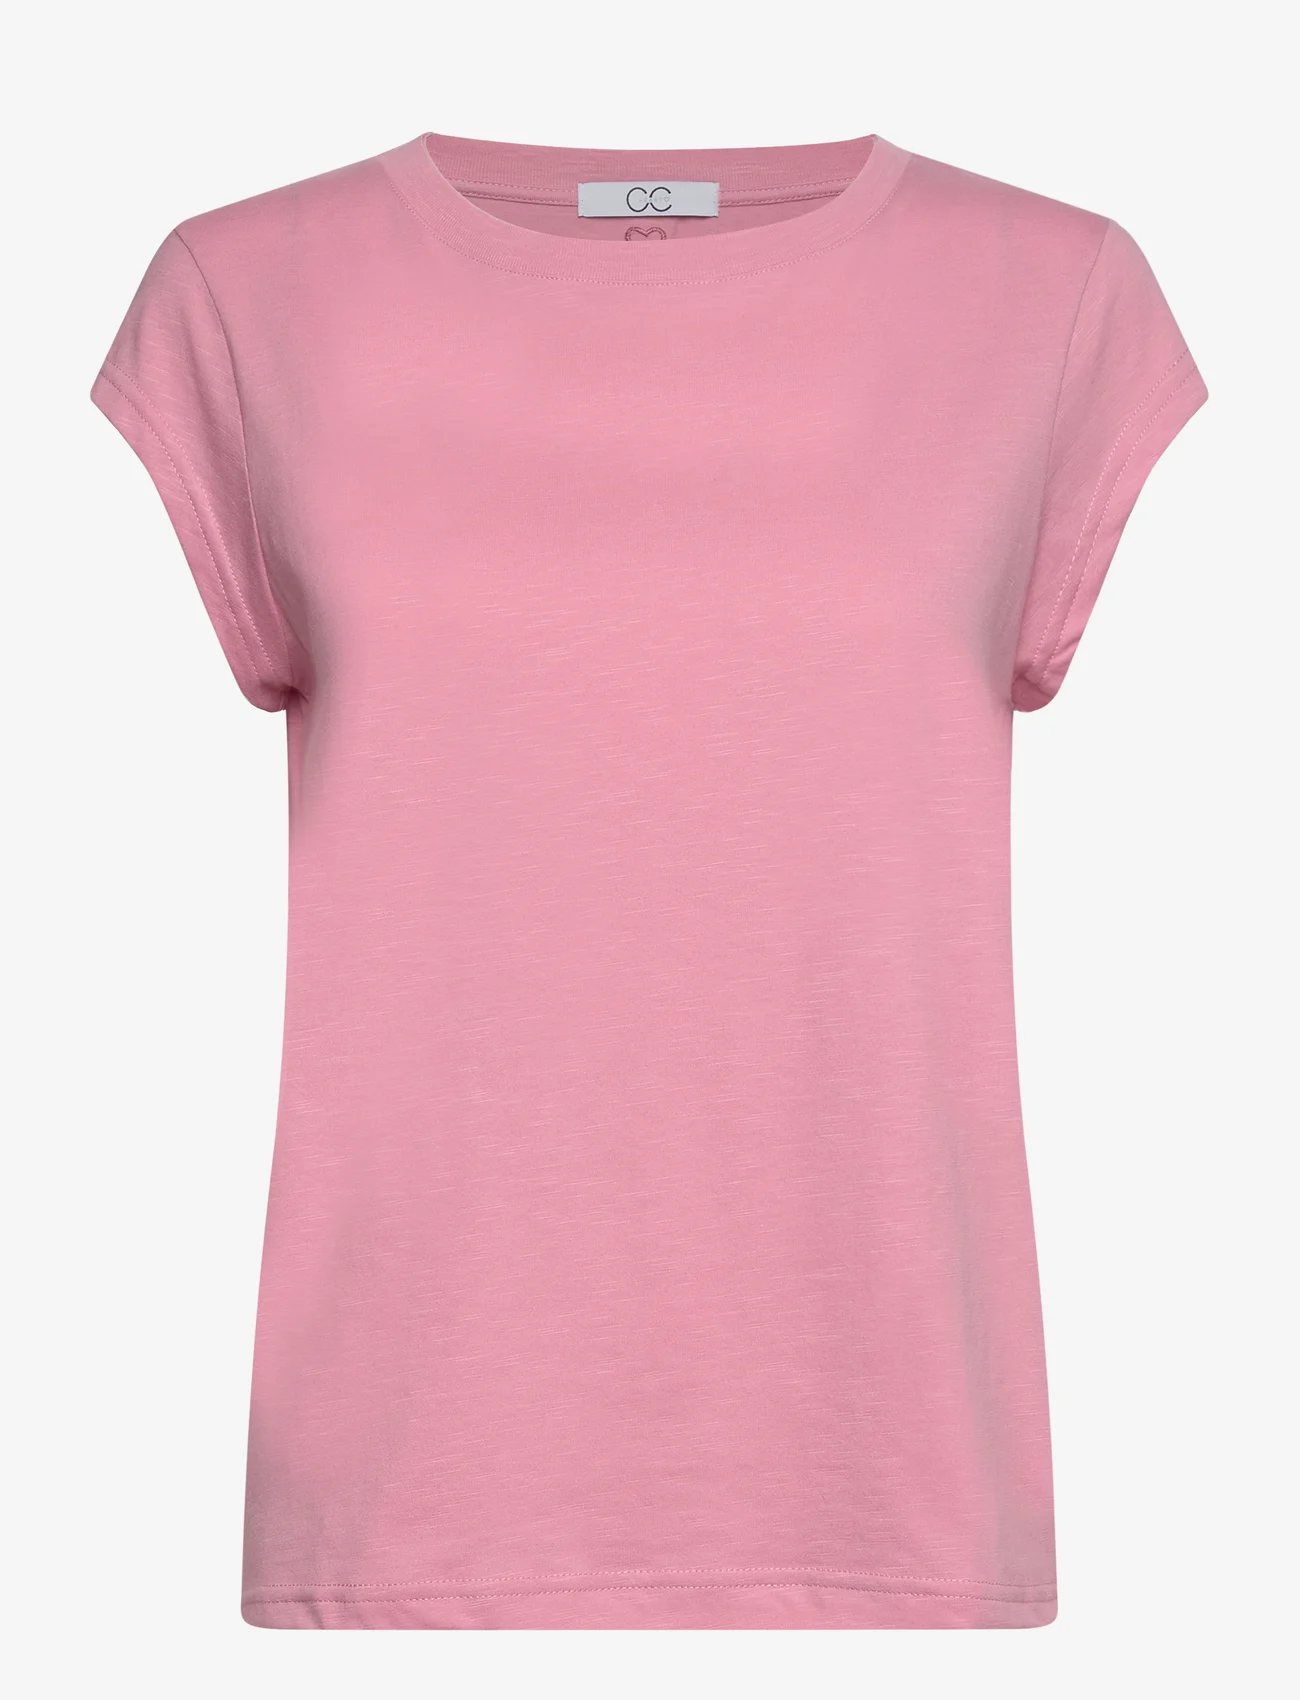 Coster Copenhagen - CC Heart basic t-shirt - t-shirts - dust pink - 0